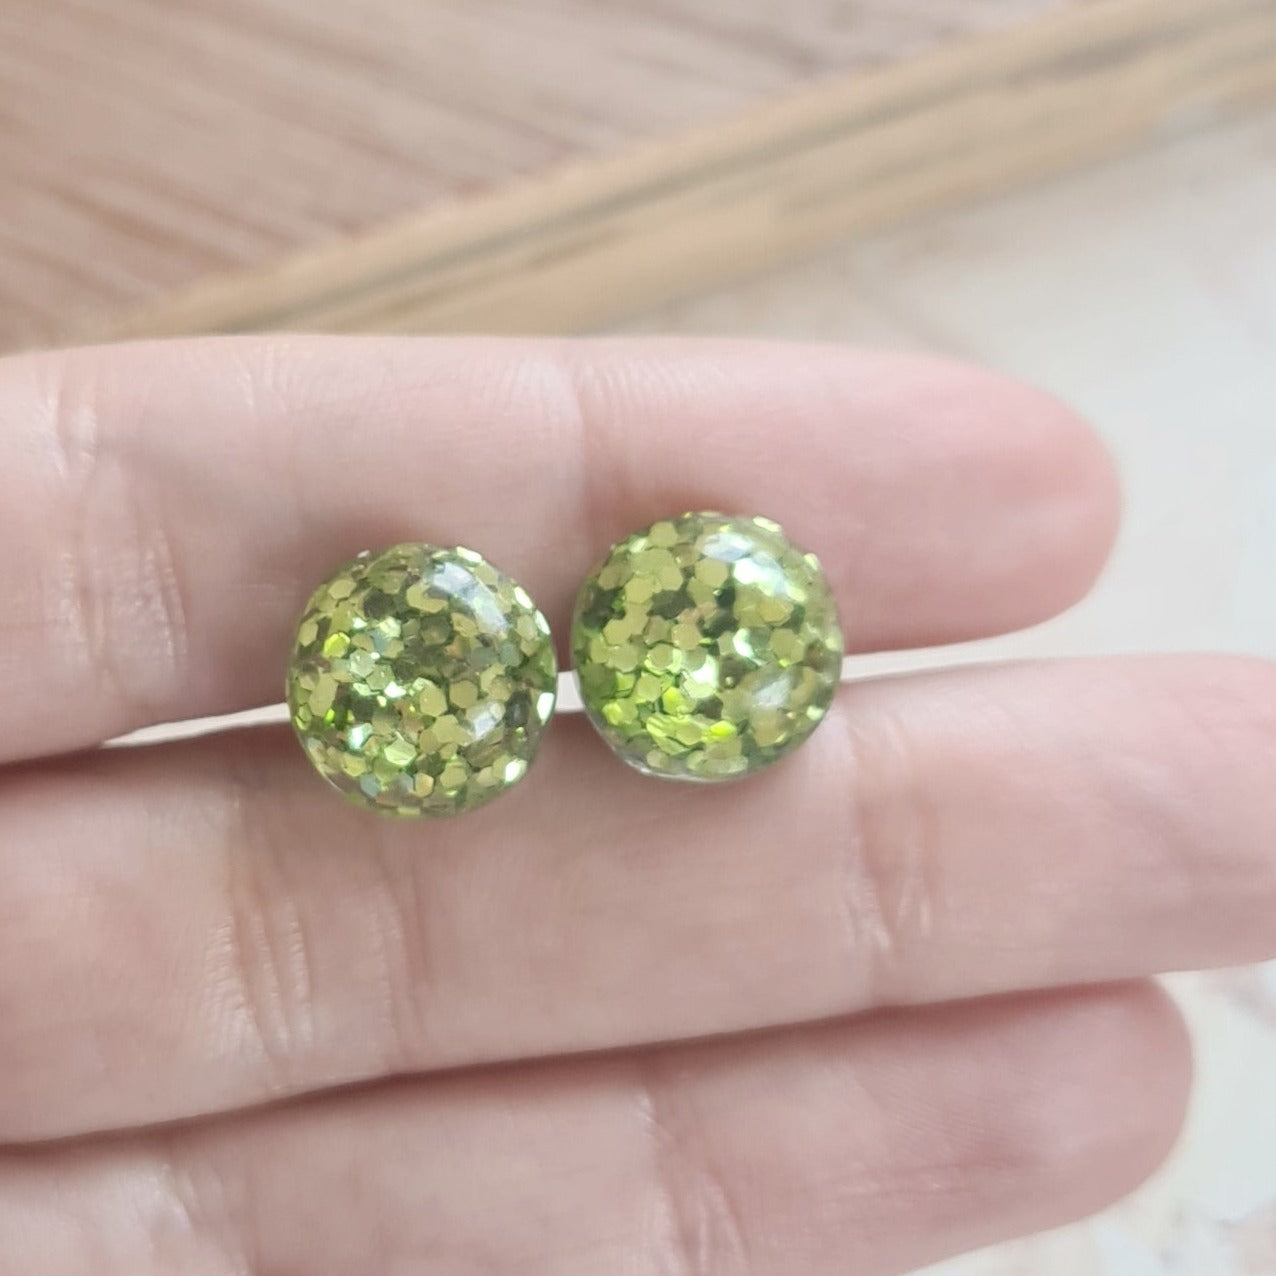 Grass green glitter stud earrings - spring colour - the joyful rebel